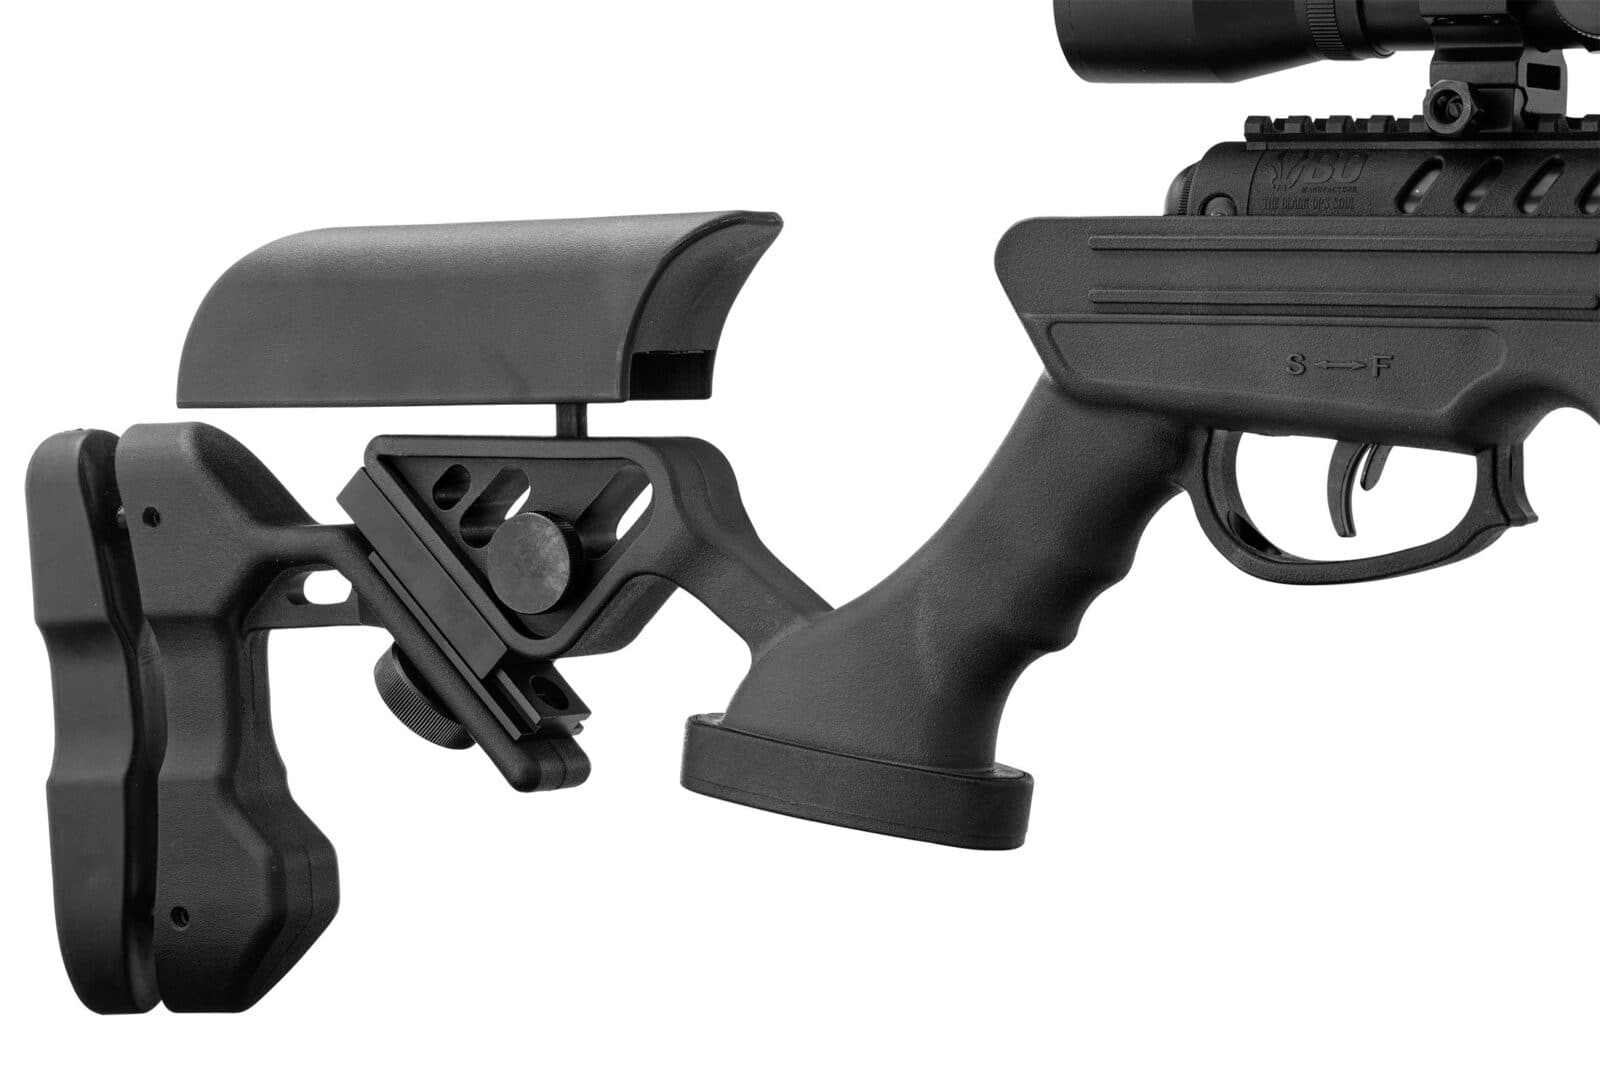 Carabina Rifle Quantico Air Black Ops 4.5 mm - Espadas y Más